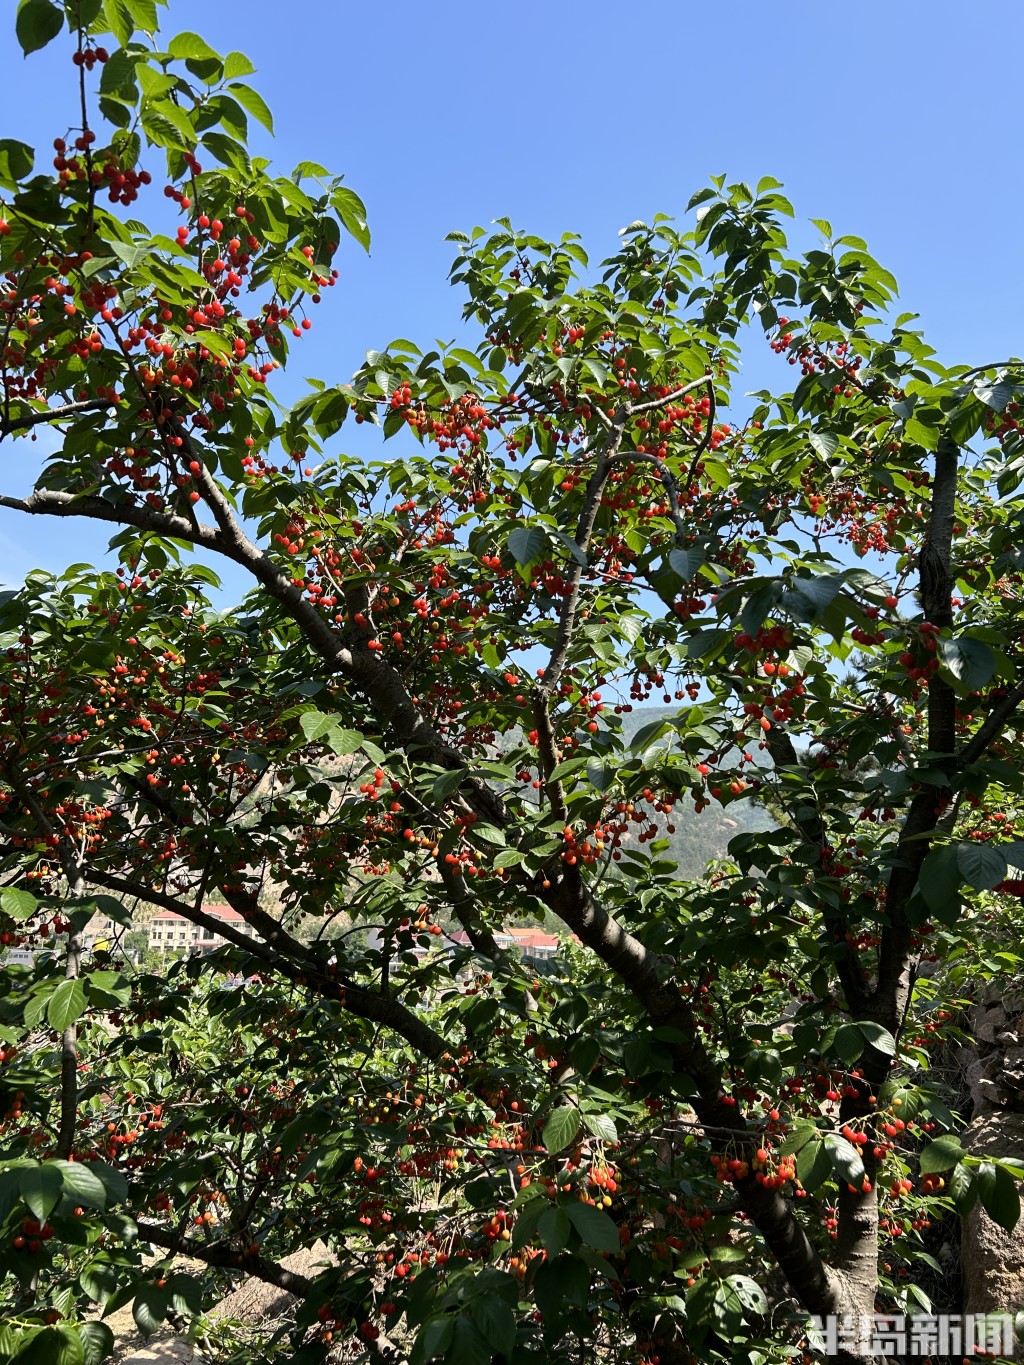 山色峪的樱桃以其卓越的口感和诱人的色泽而声名远扬许多往年的老